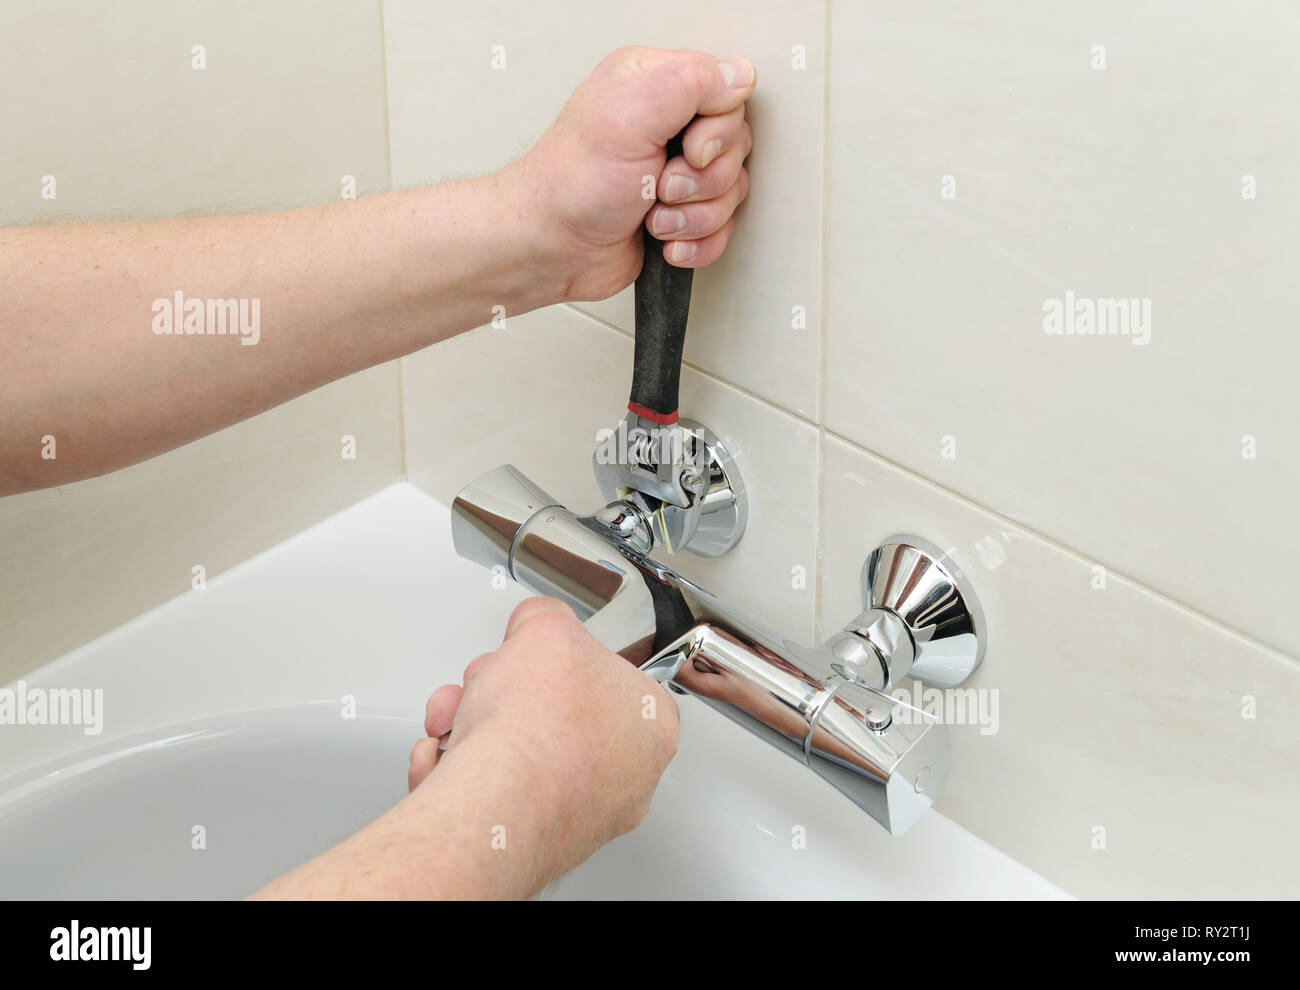 L'installation de robinet avec thermostat. L'homme a les mains robinet baignoire fixation en place. Banque D'Images